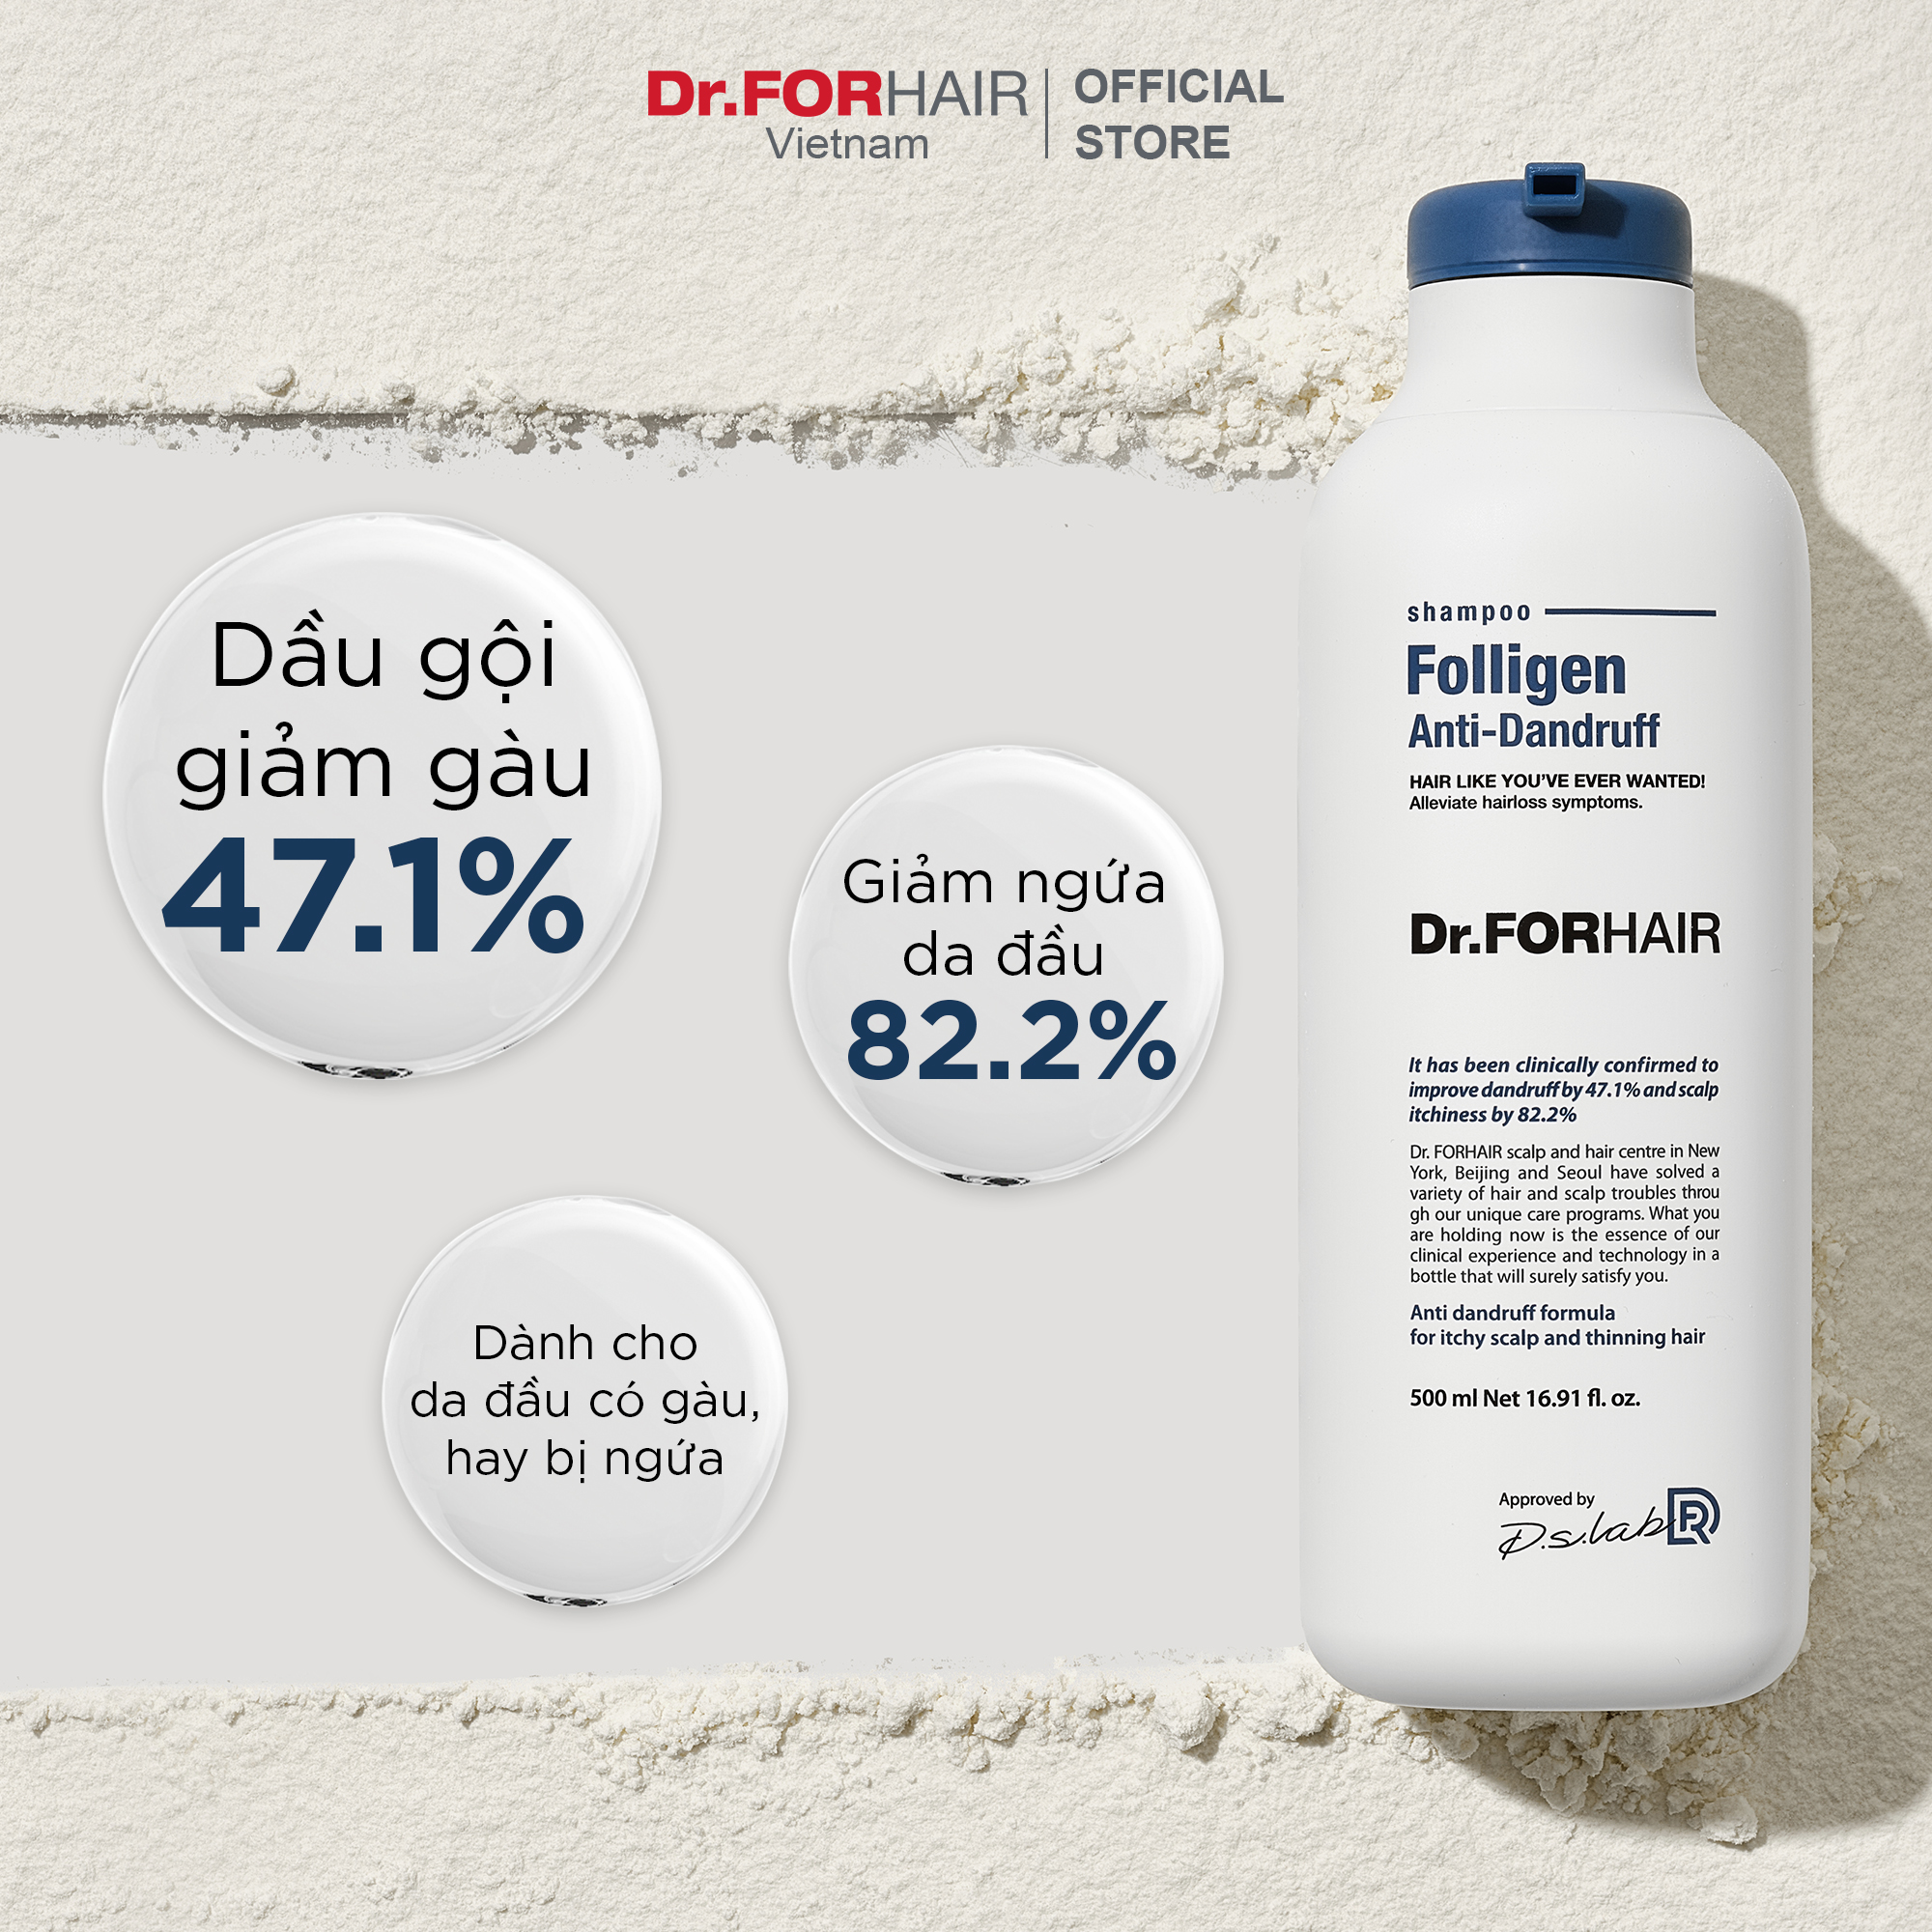 Bộ dầu gội giảm gàu giảm ngứa và xịt dưỡng hỗ trợ mọc tóc dày và khỏe Dr.FORHAIR Folligen Anti-Dandruff Shampoo và Folligen Tonic Original